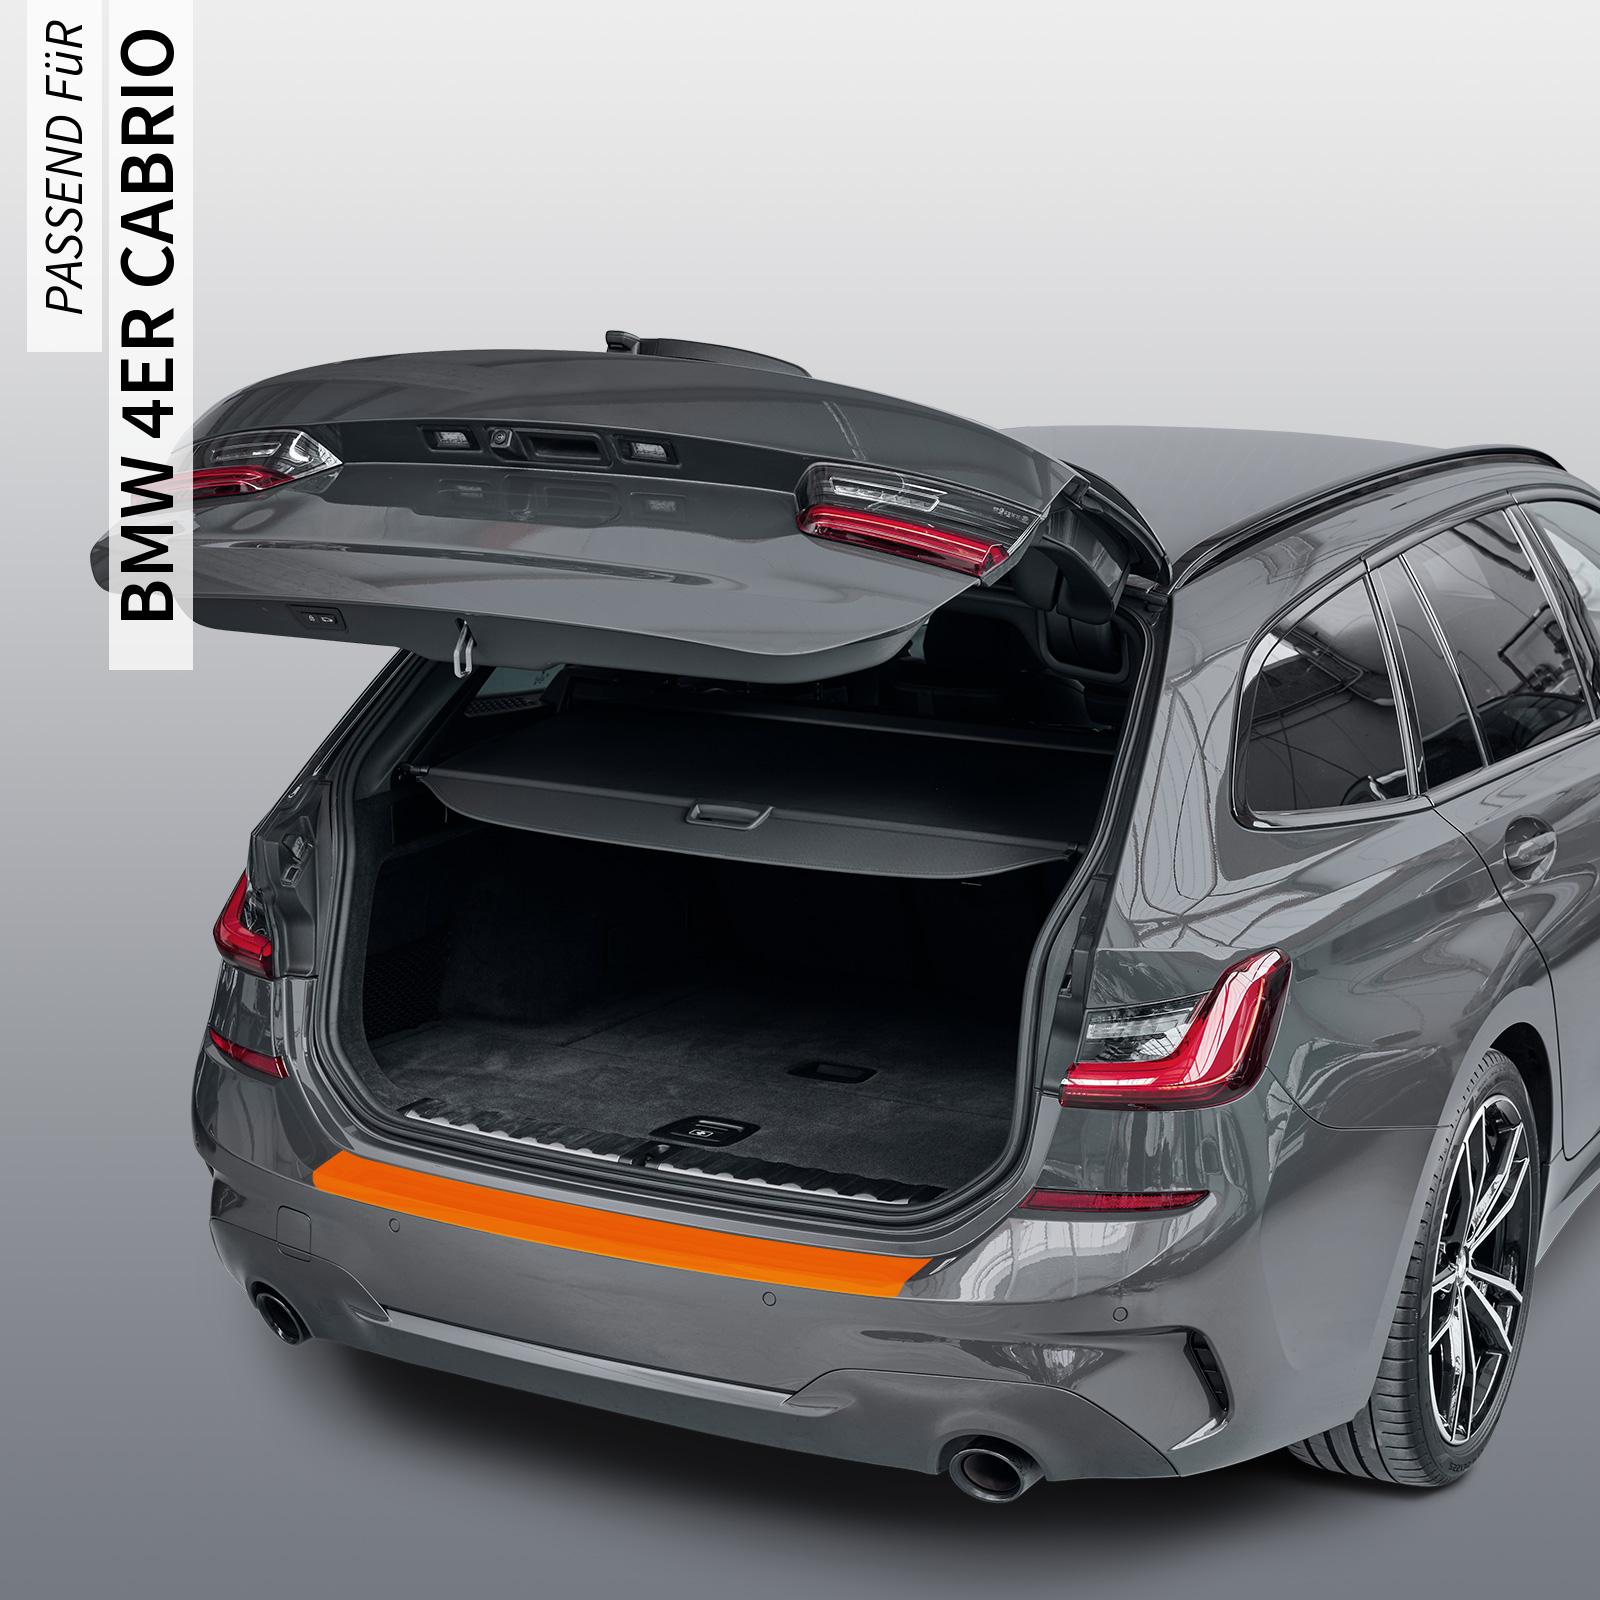 Ladekantenschutzfolie - Transparent Glatt Hochglänzend 150 µm stark für BMW 4er Cabrio Typ F33, BJ 2013-2020